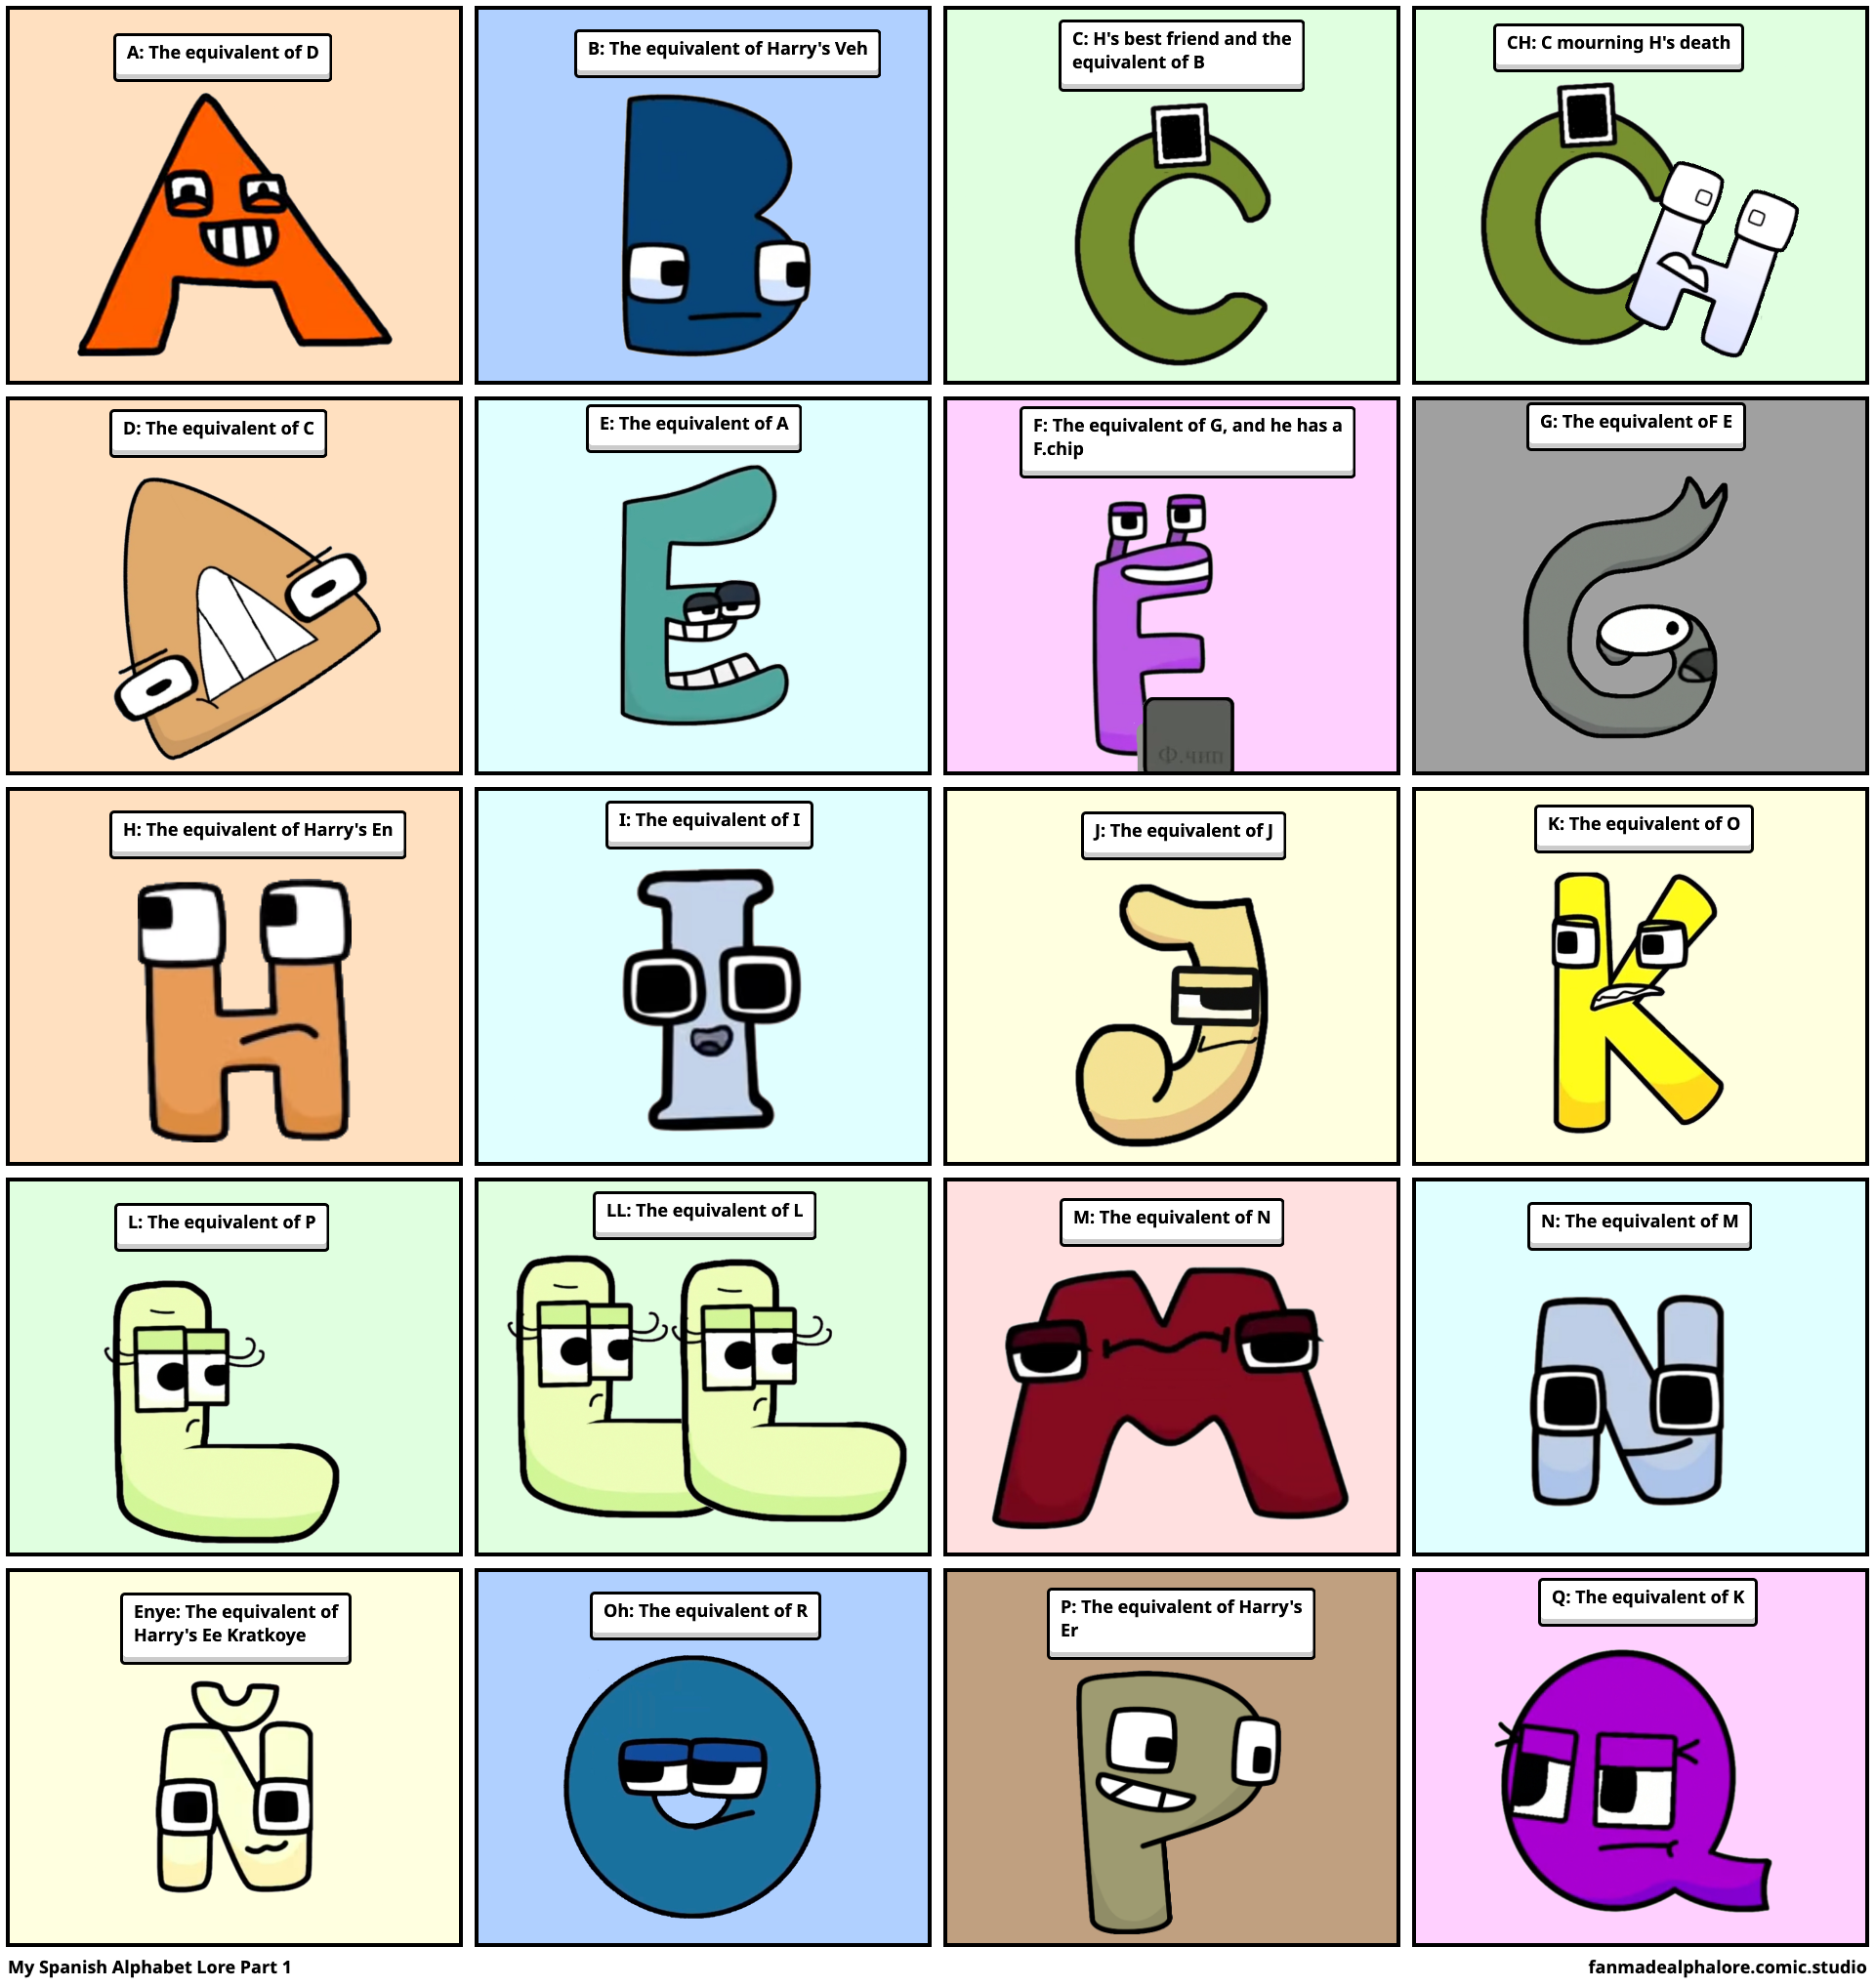 Spanish alphabet lore M. - Comic Studio